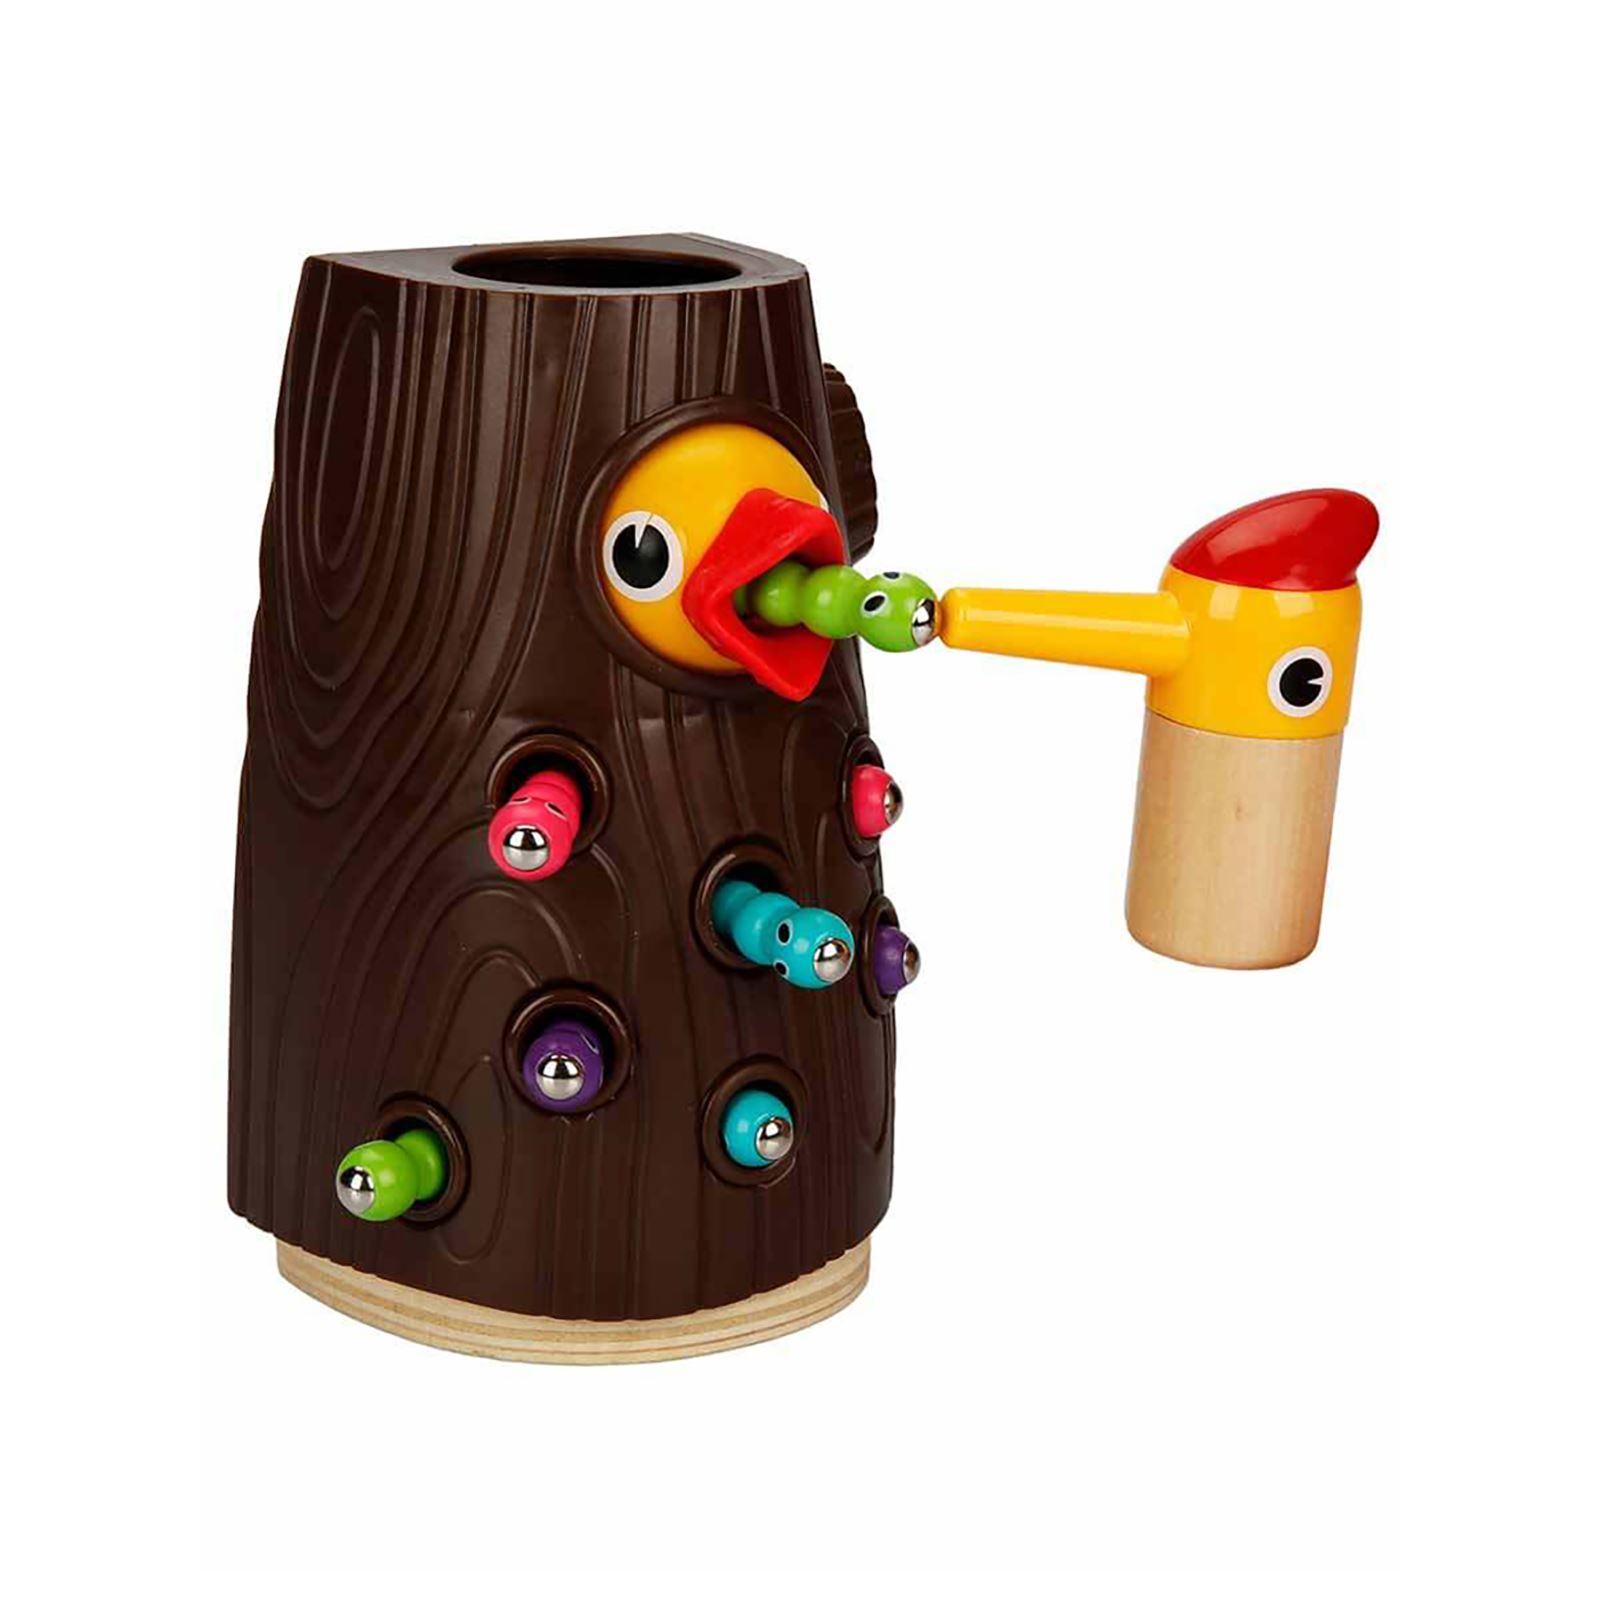 Woody Manyetik Ağaçkakan Besleme Oyunu 